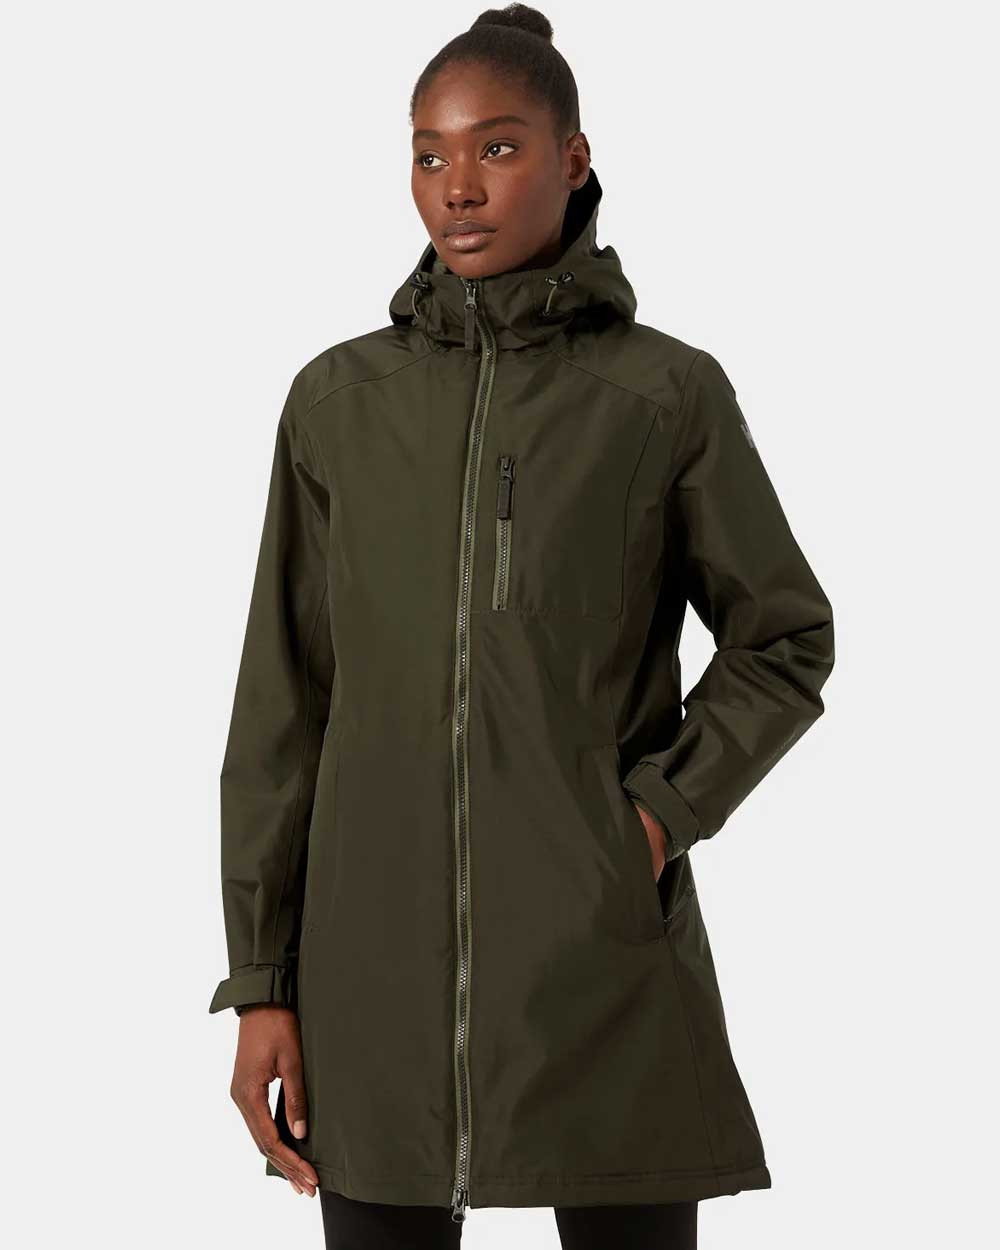 Best women's waterproof jackets – Montane - US